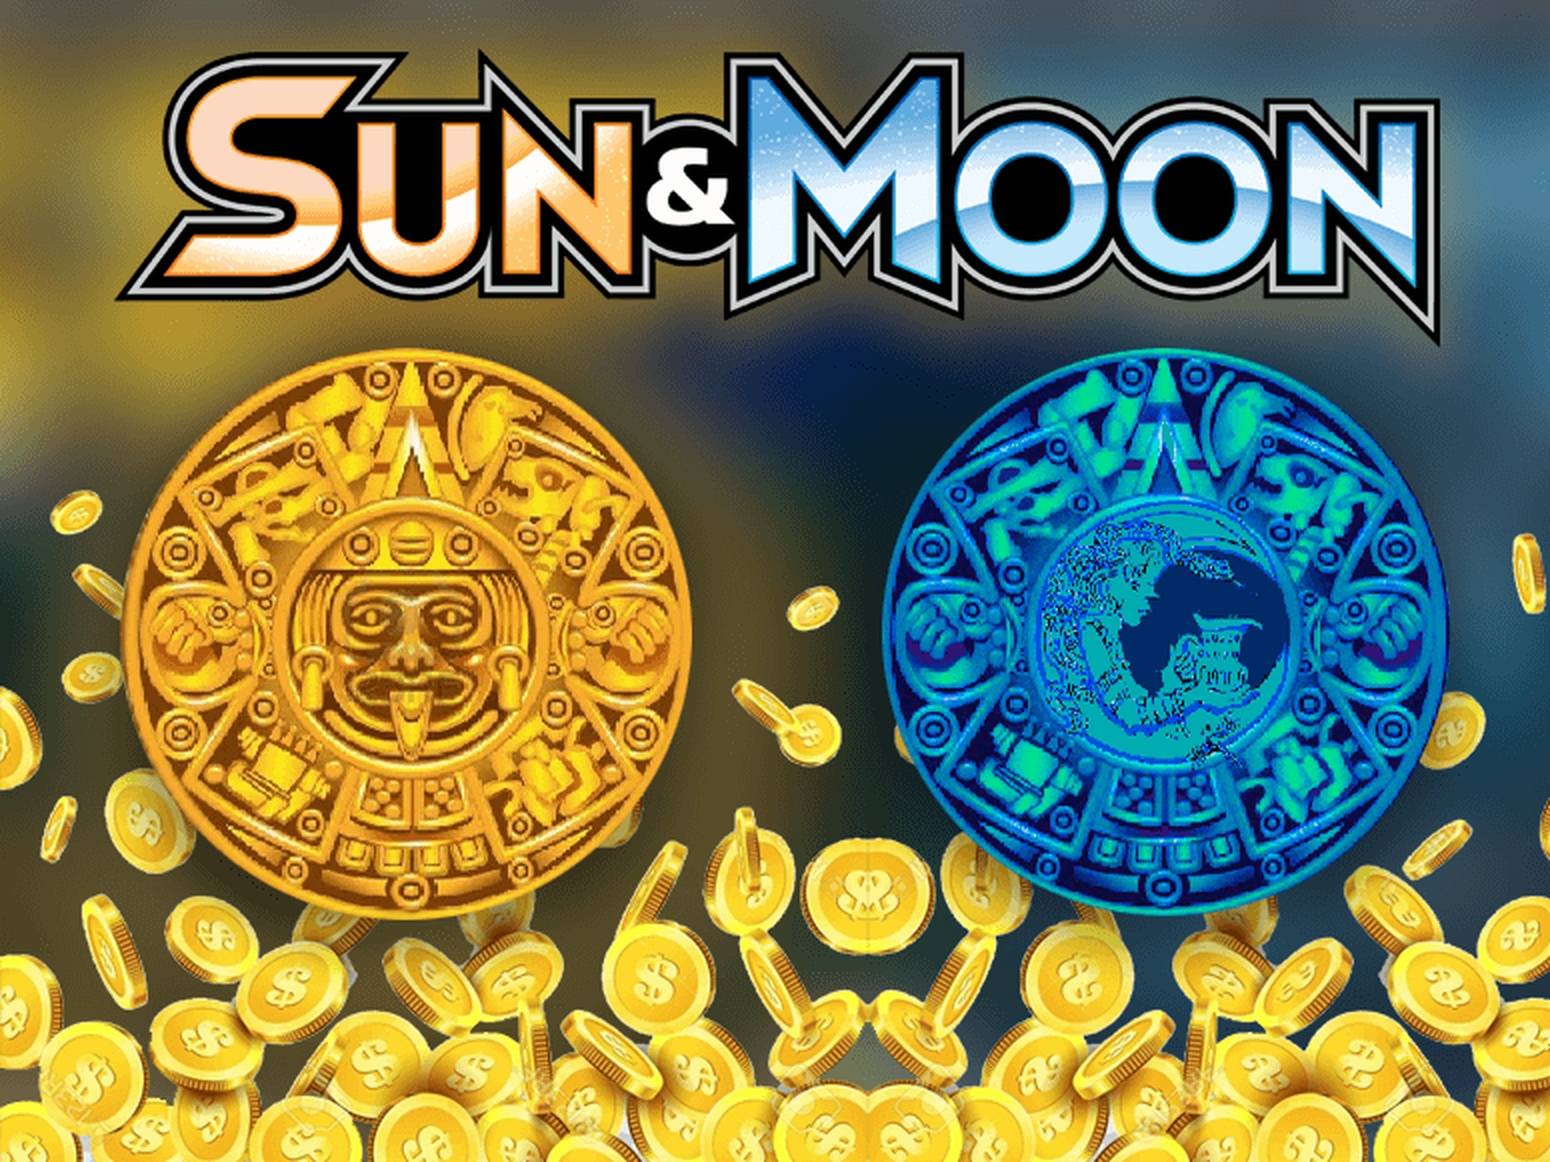 Sun and Moon demo